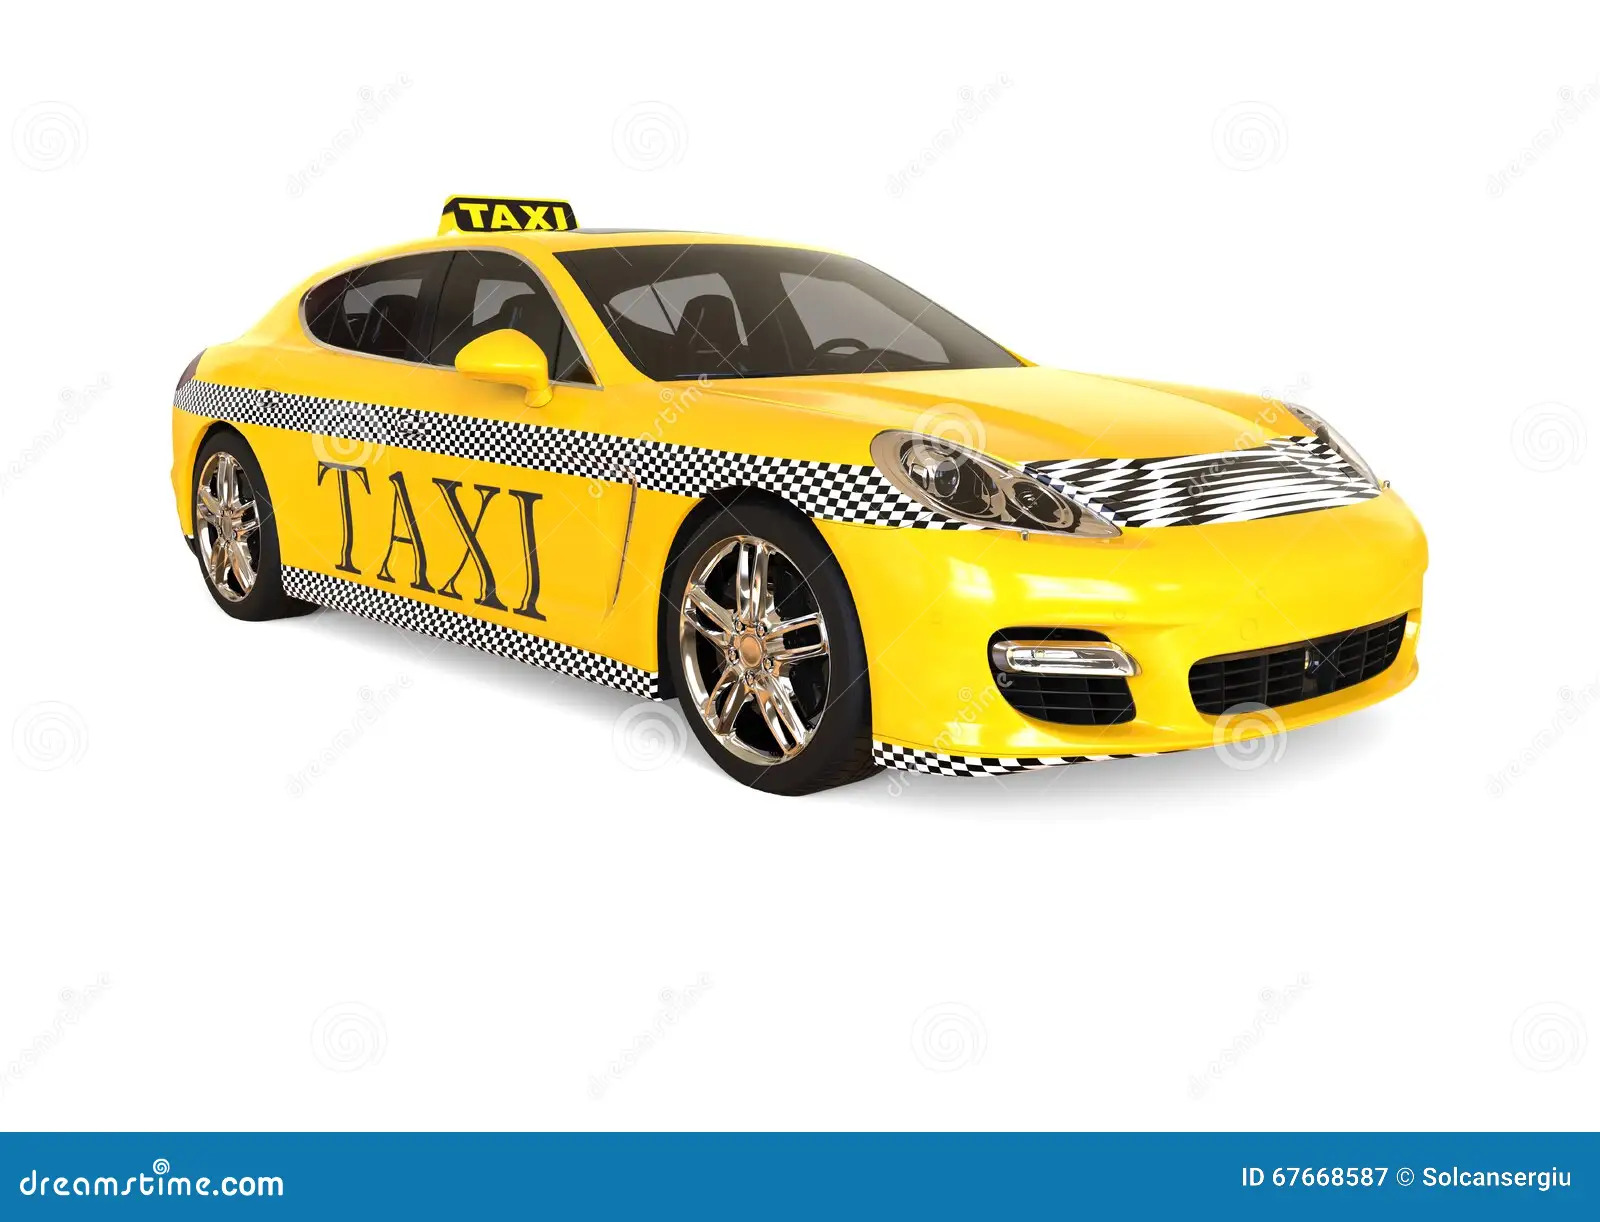 Pre book taxi orlando airpor - Florida - Orlando ID1541929